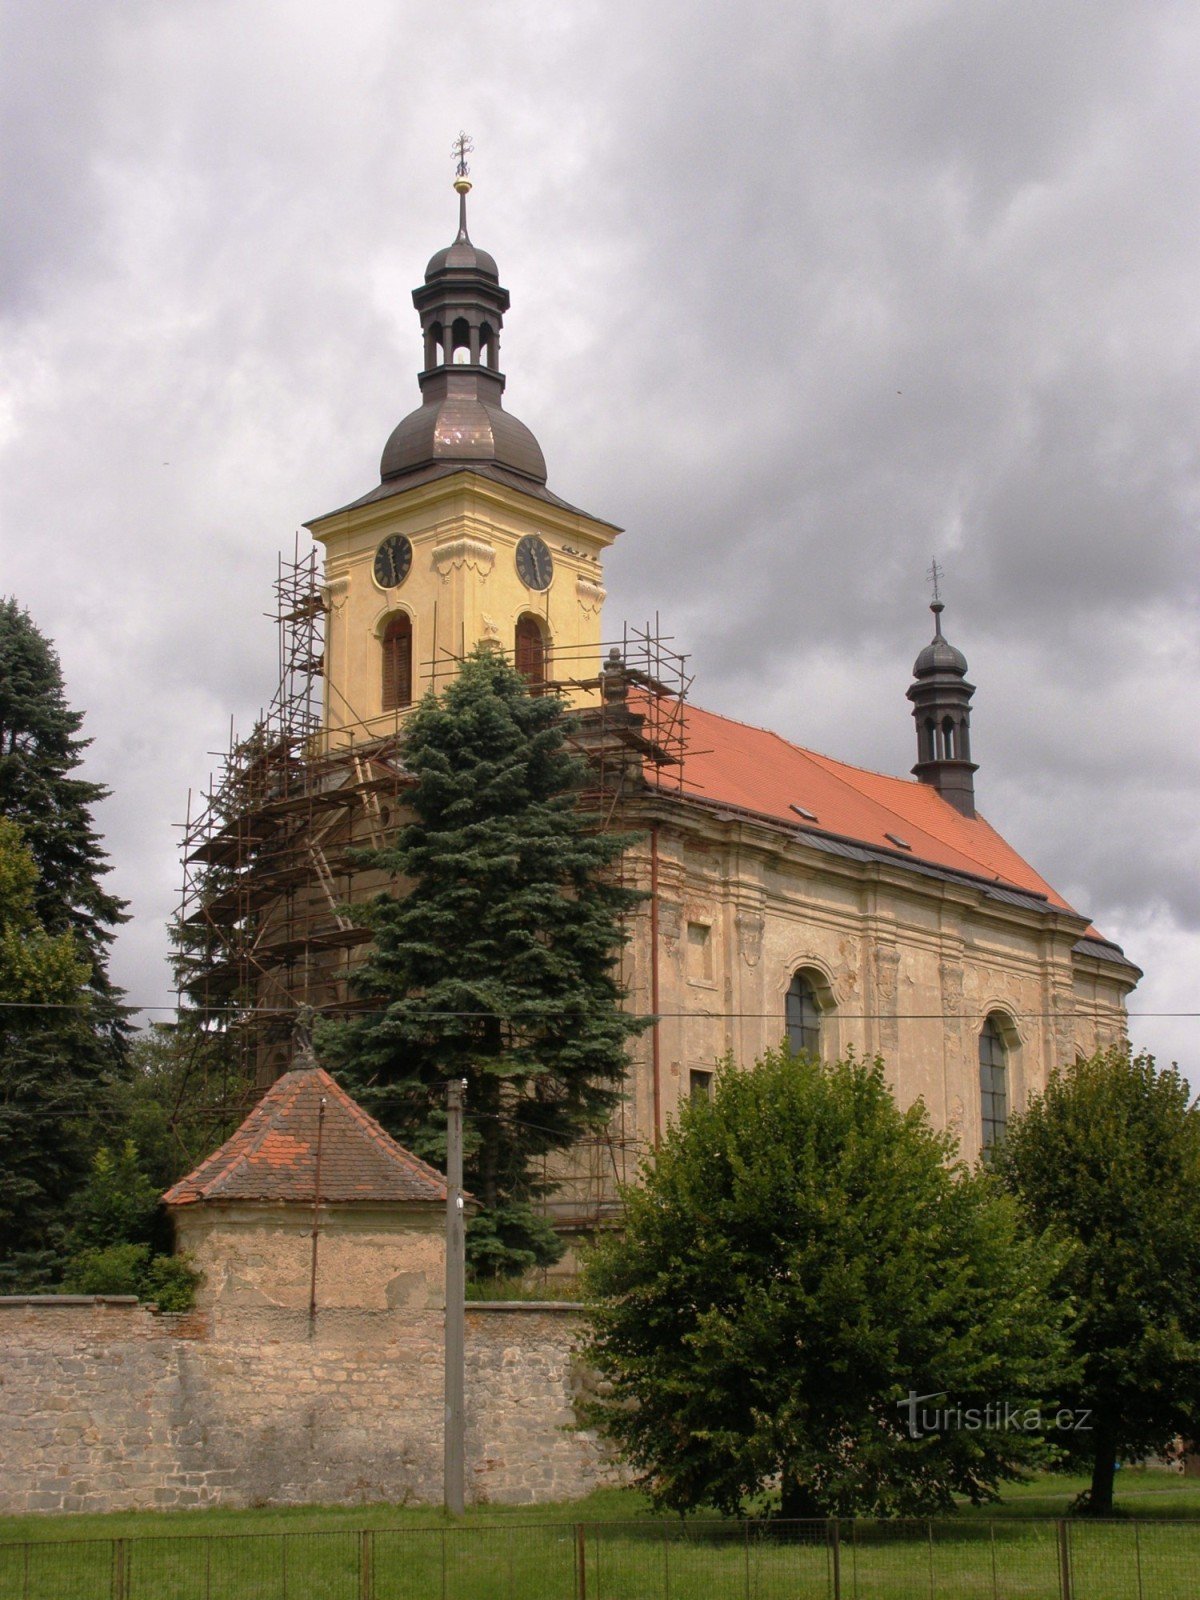 Veliš - kostel sv. Václava